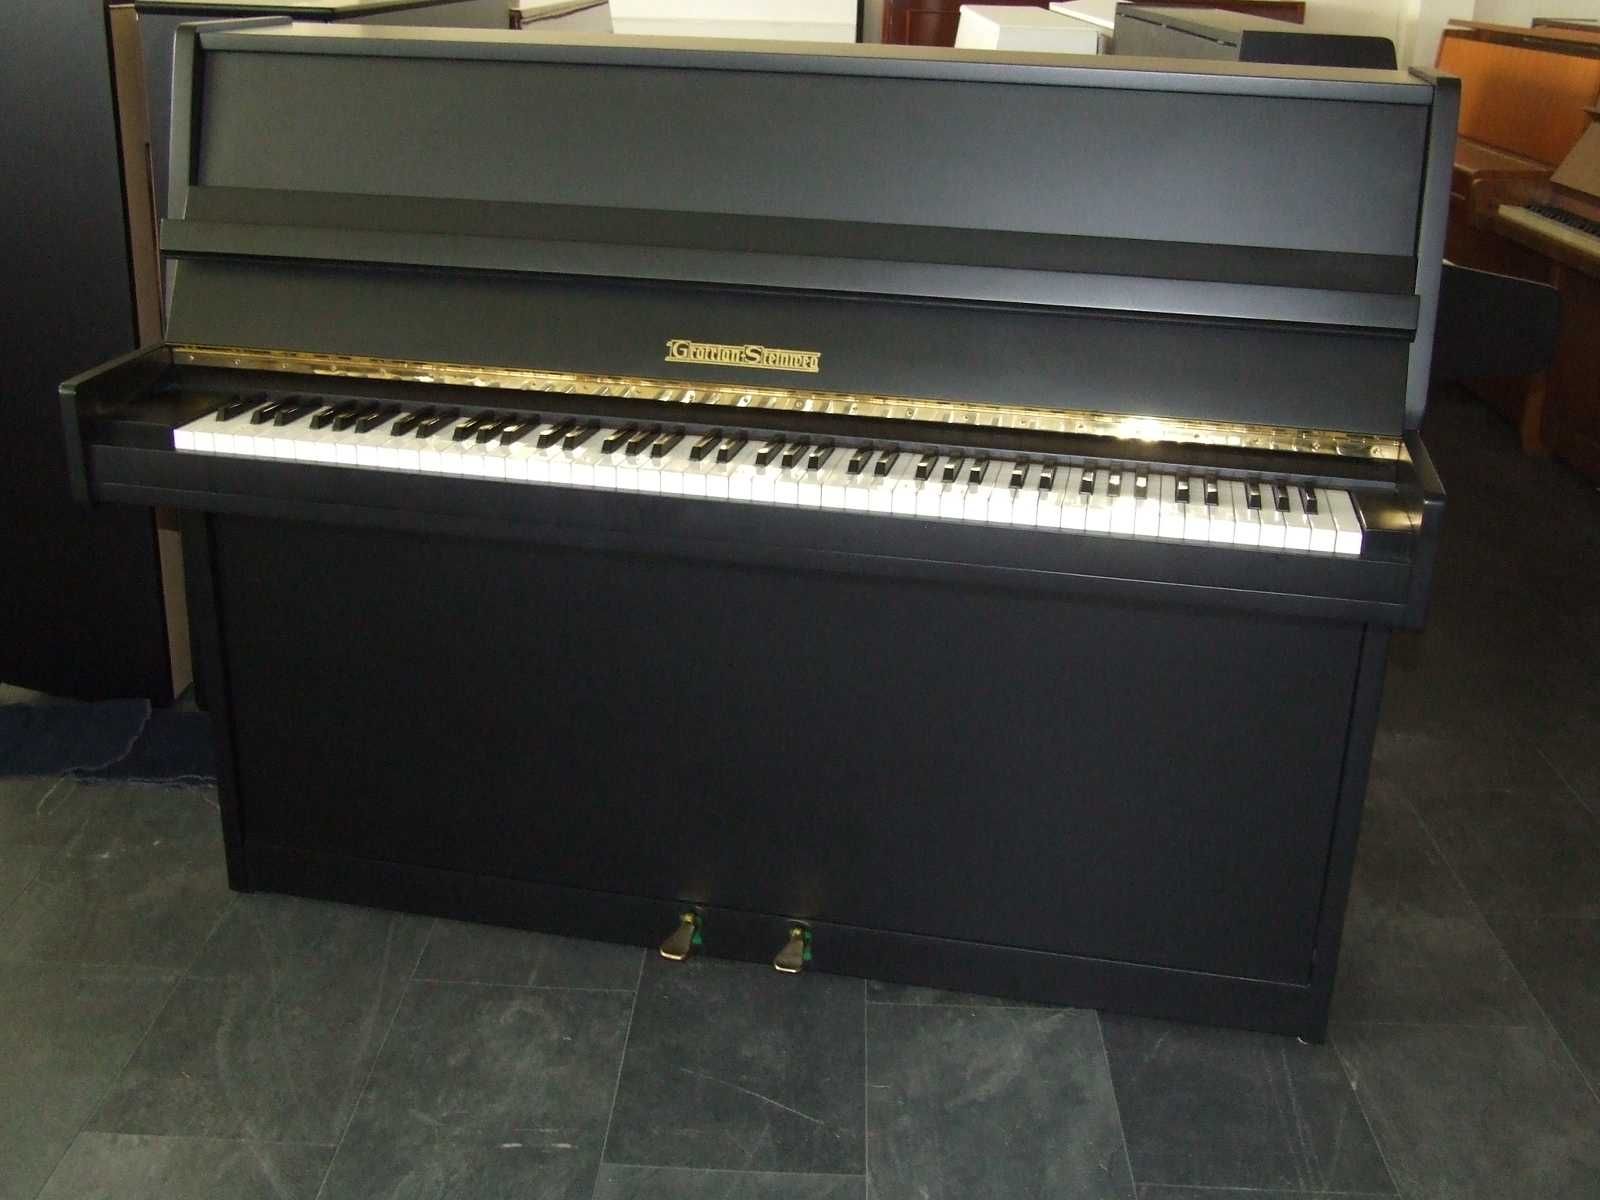 Pianino Grotrian Steinweg mod 110, czarne